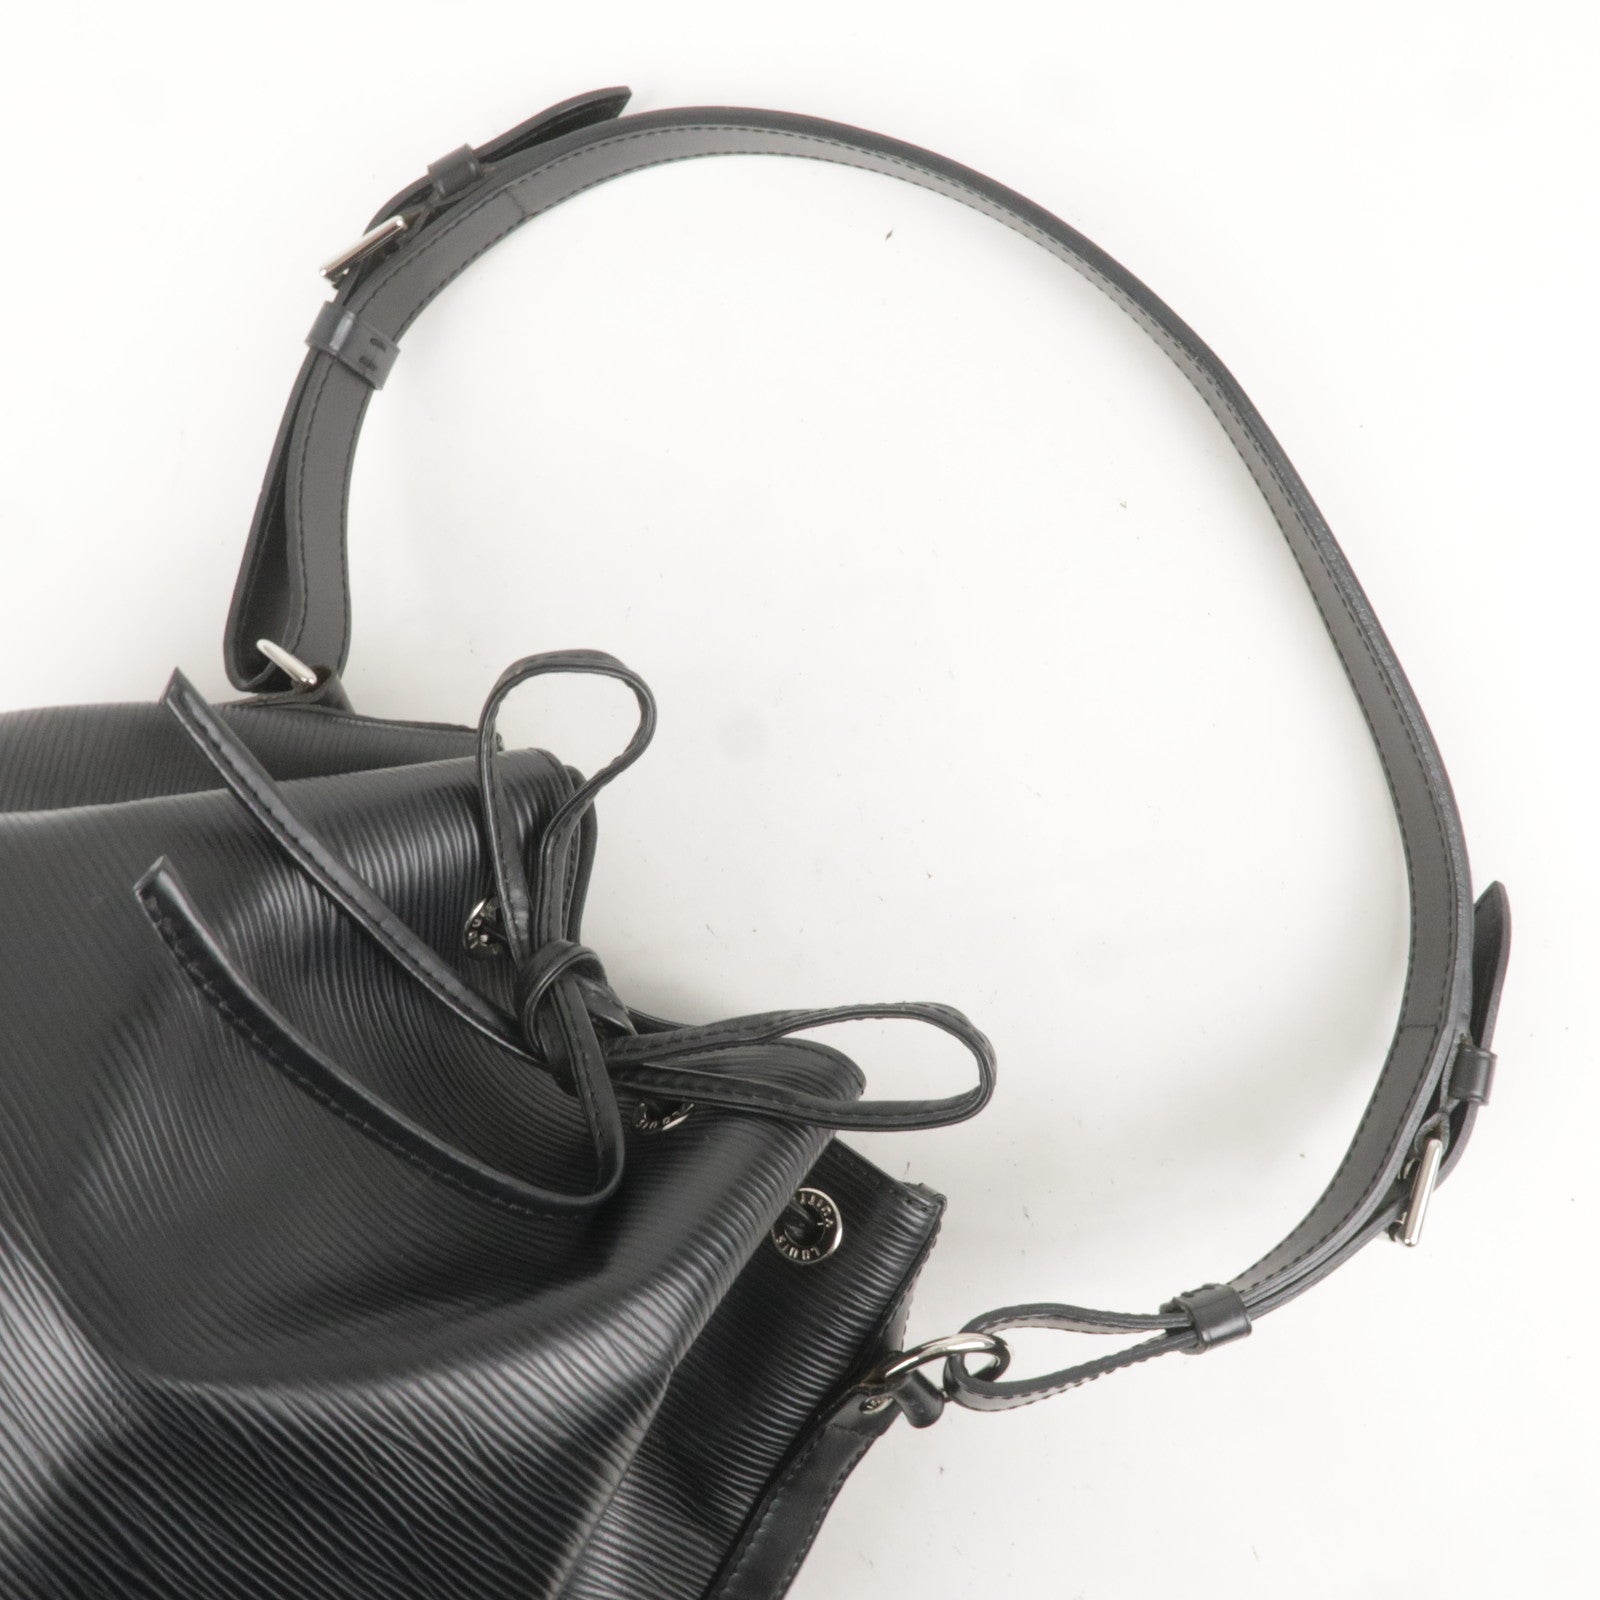 Authentic-Louis-Vuitton-Epi-Petit-Noe-Shoulder-Bag-Black-M40752